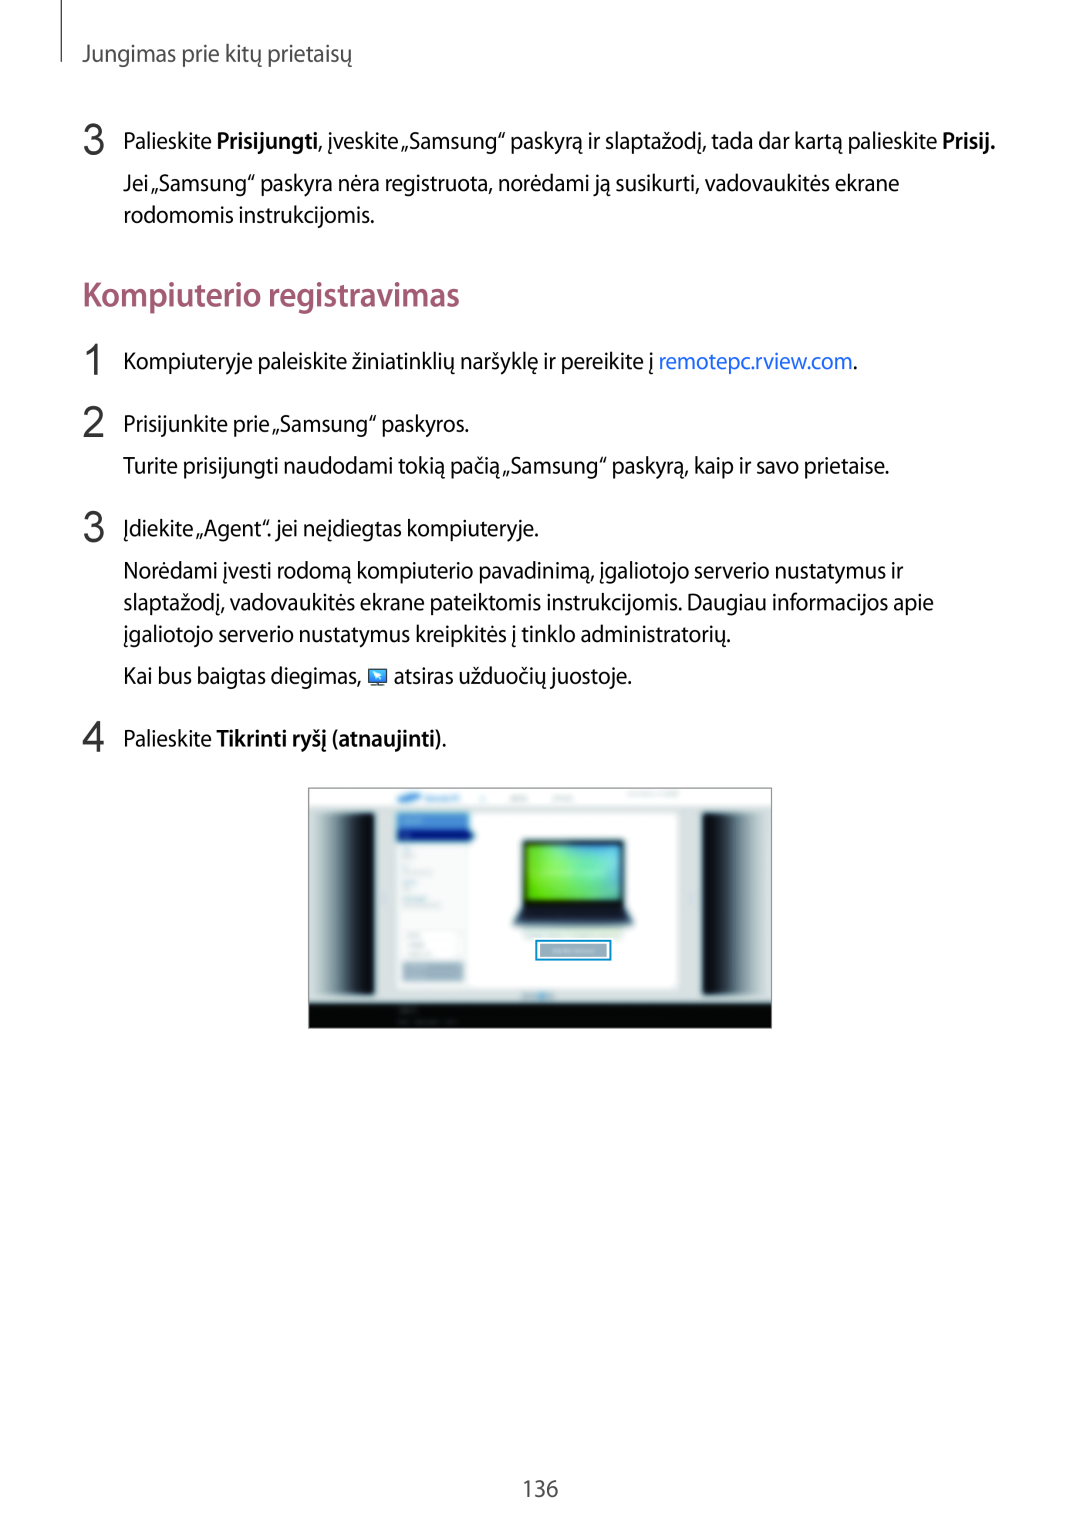 Samsung SM-T800NZWASEB manual Kompiuterio registravimas, Palieskite Tikrinti ryšį atnaujinti, Jungimas prie kitų prietaisų 